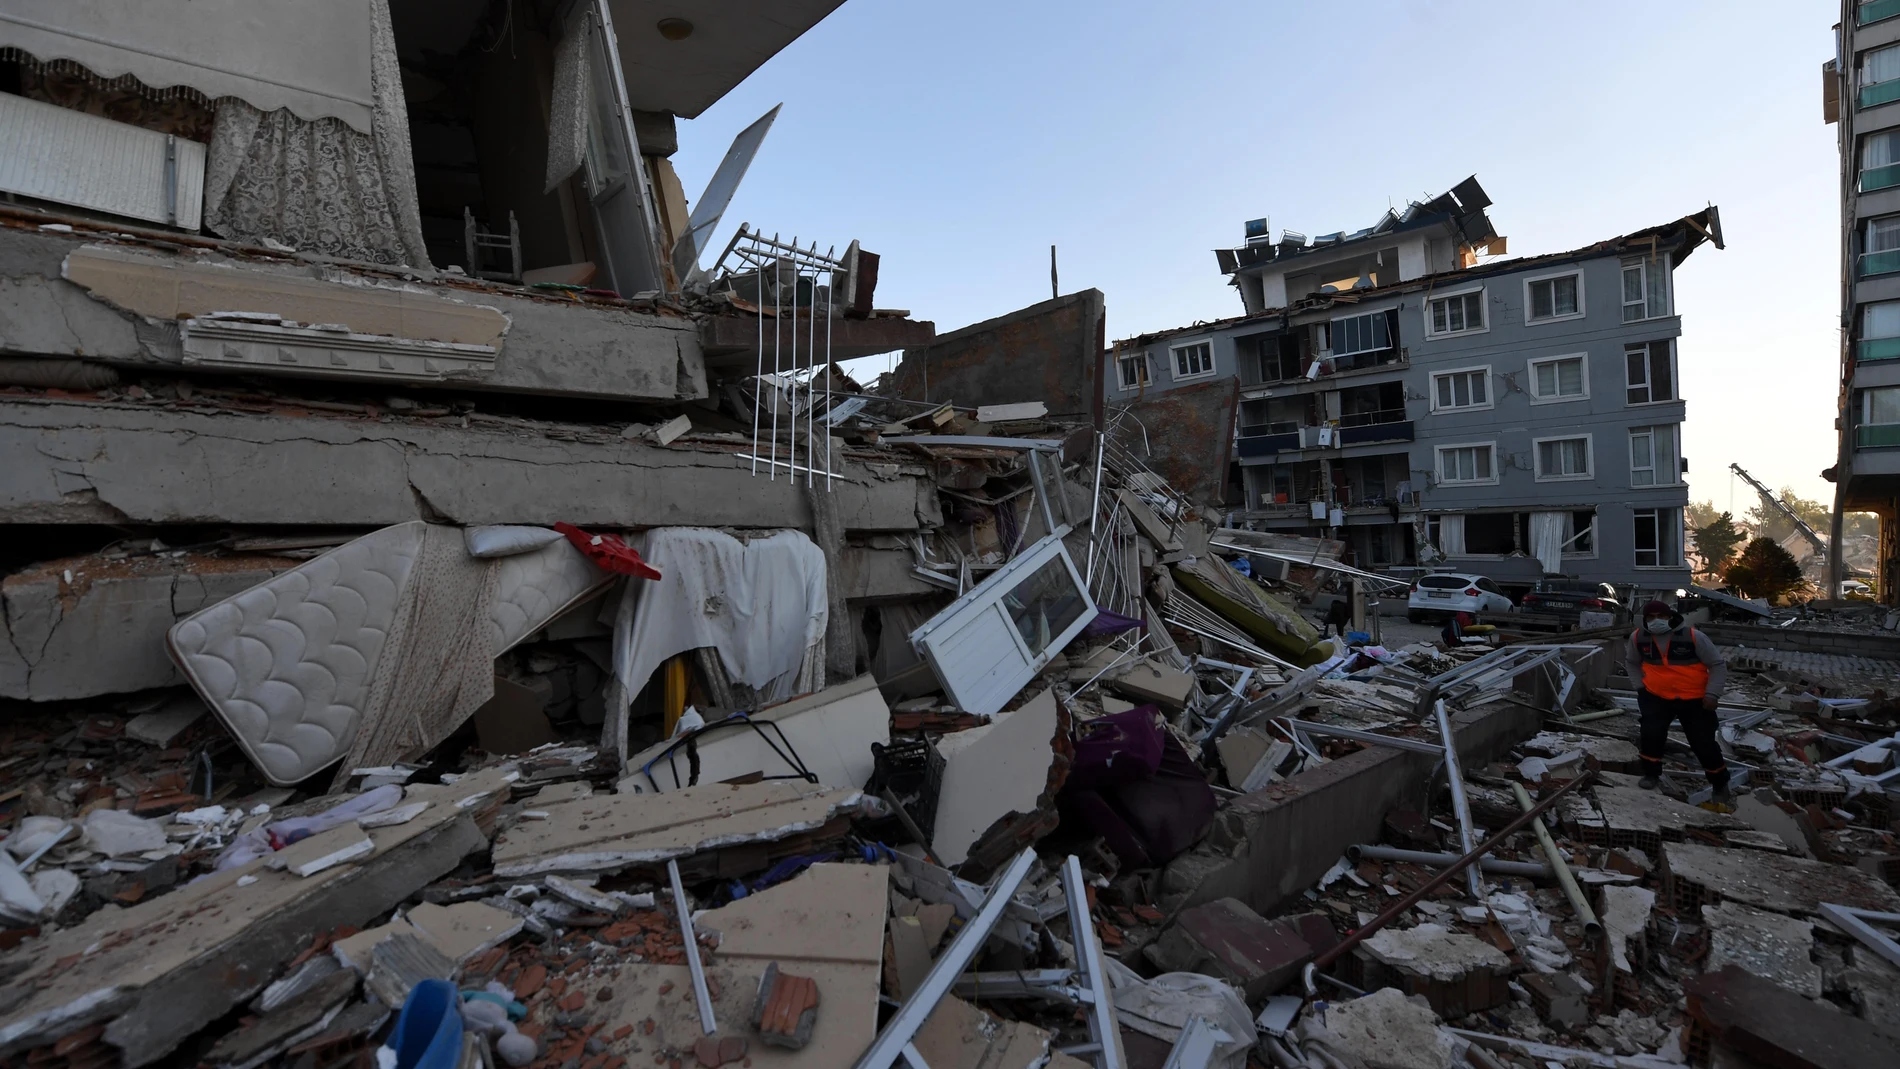 Fundación Unicaja respalda la labor de Acnur y Unicef con los afectados por los terremotos de Turquía y Siria